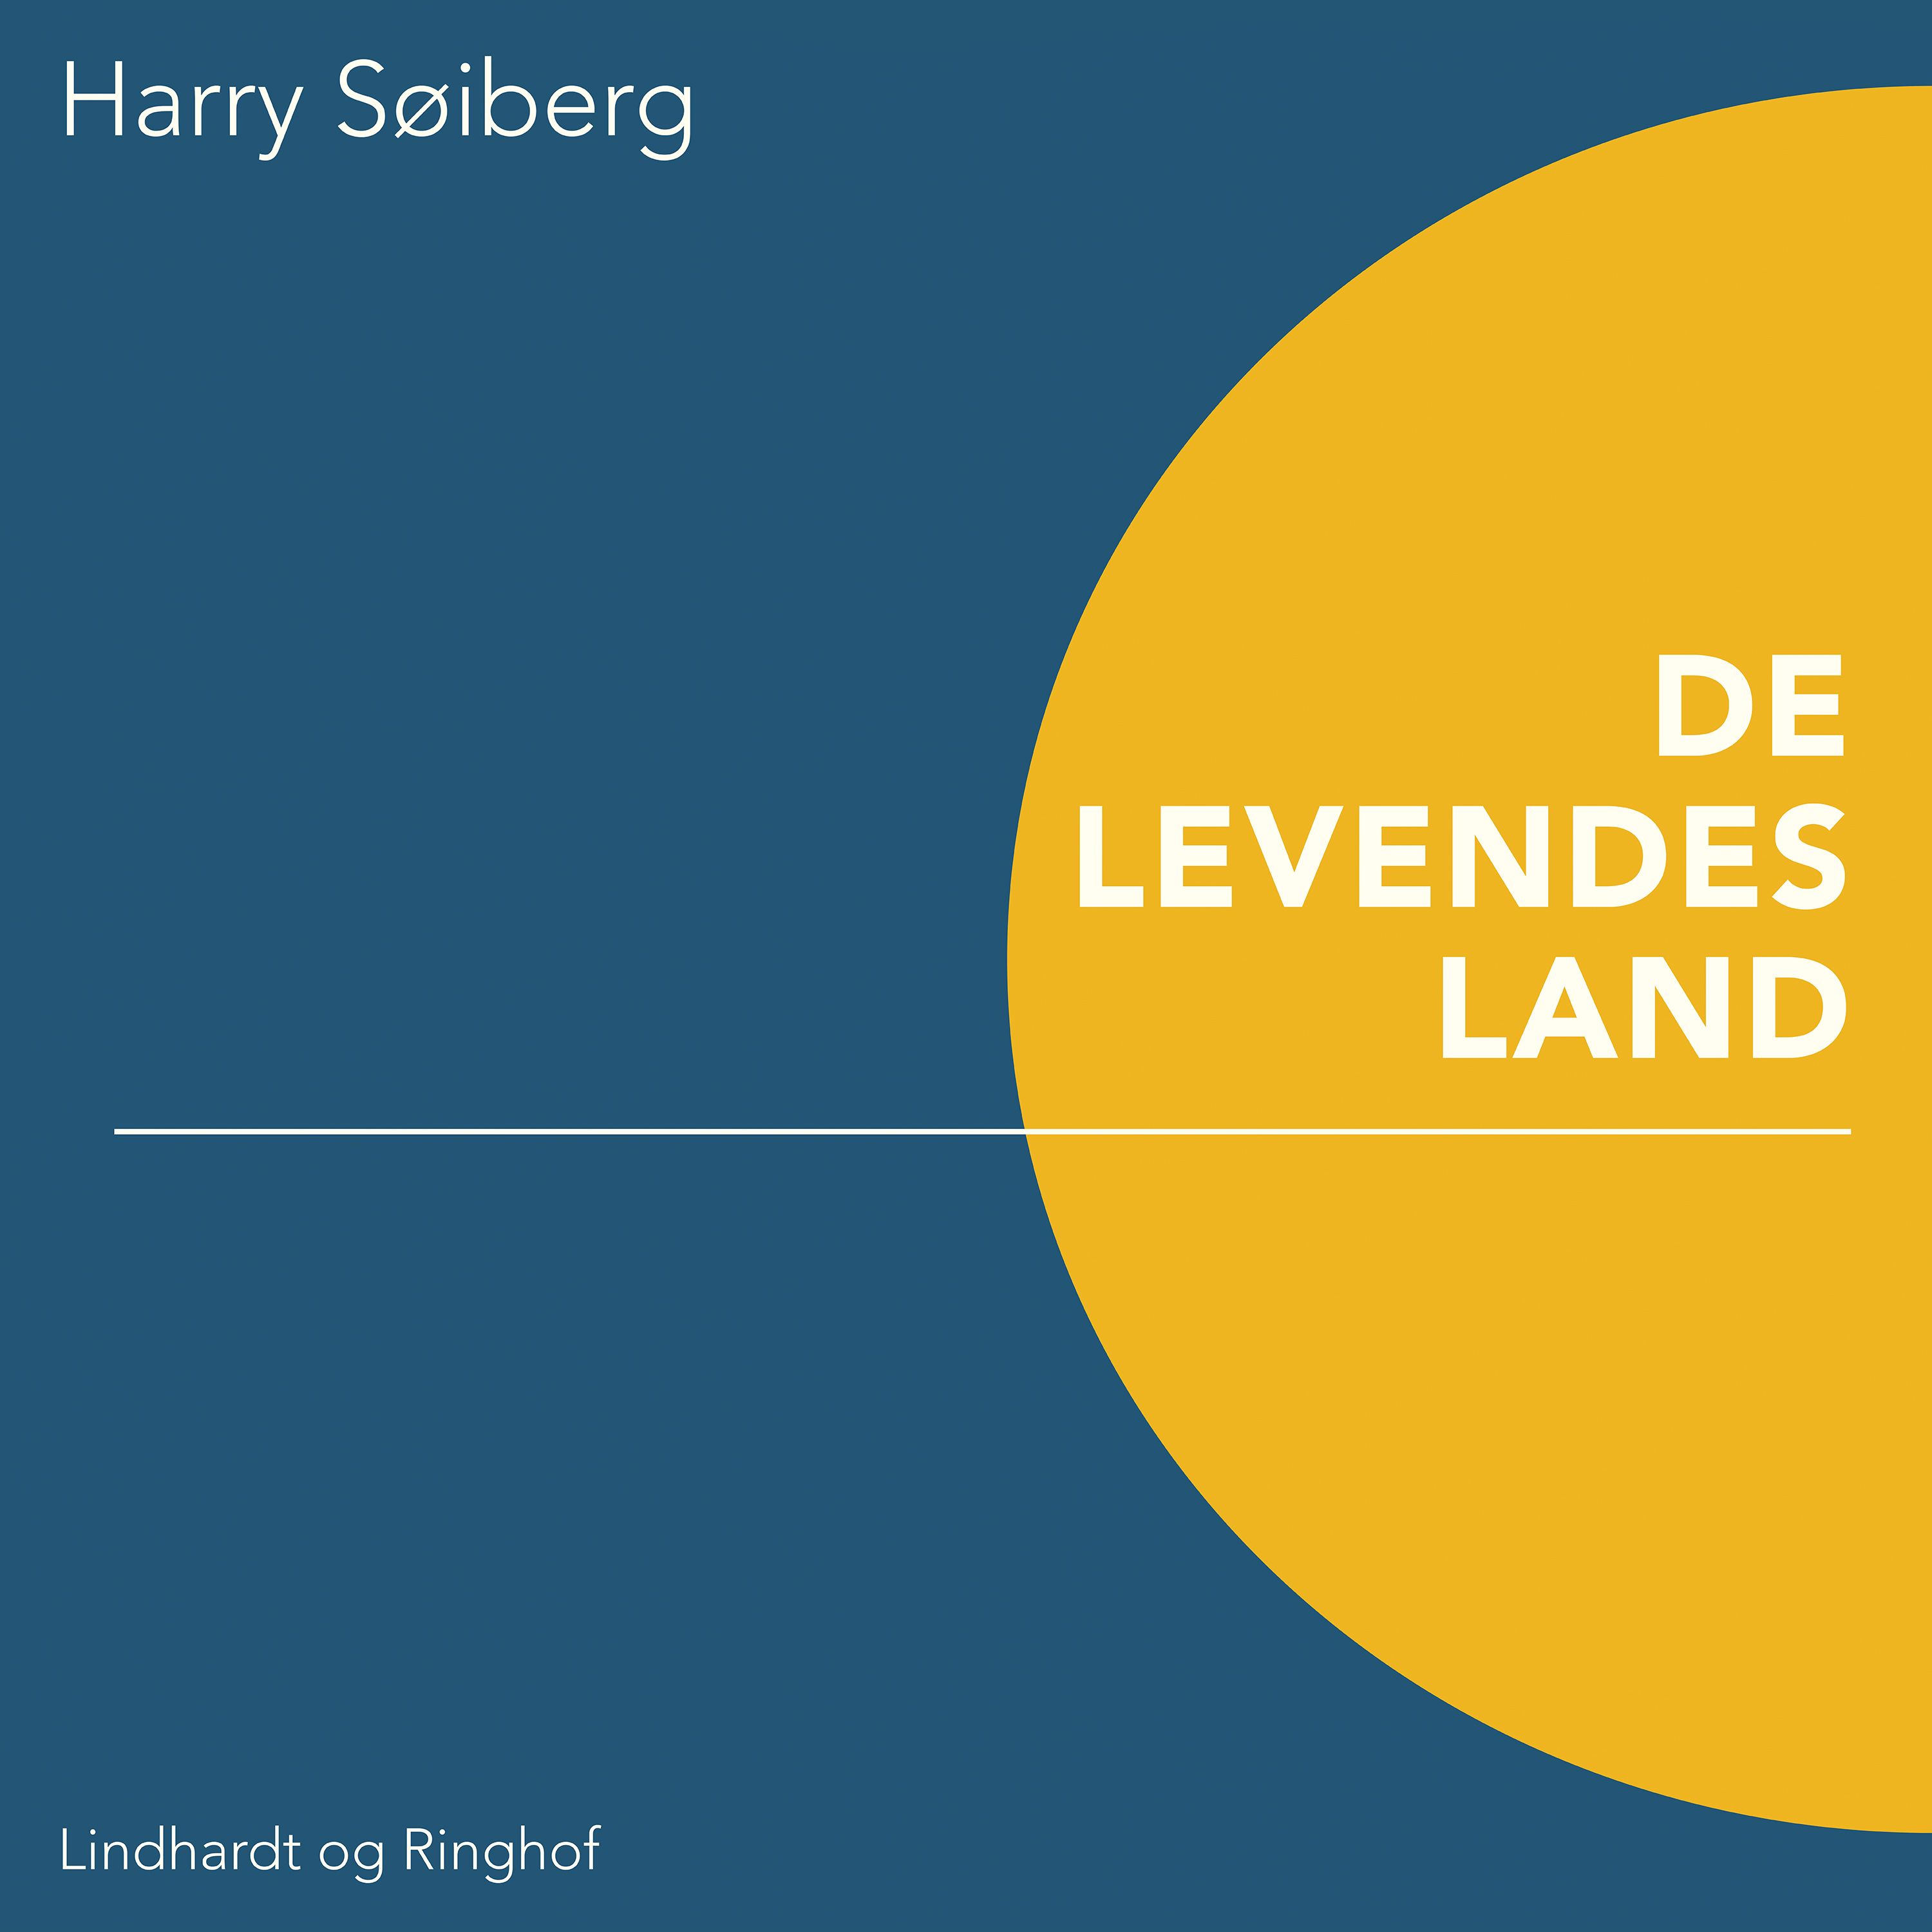 De levendes land, lydbog af Harry Søiberg